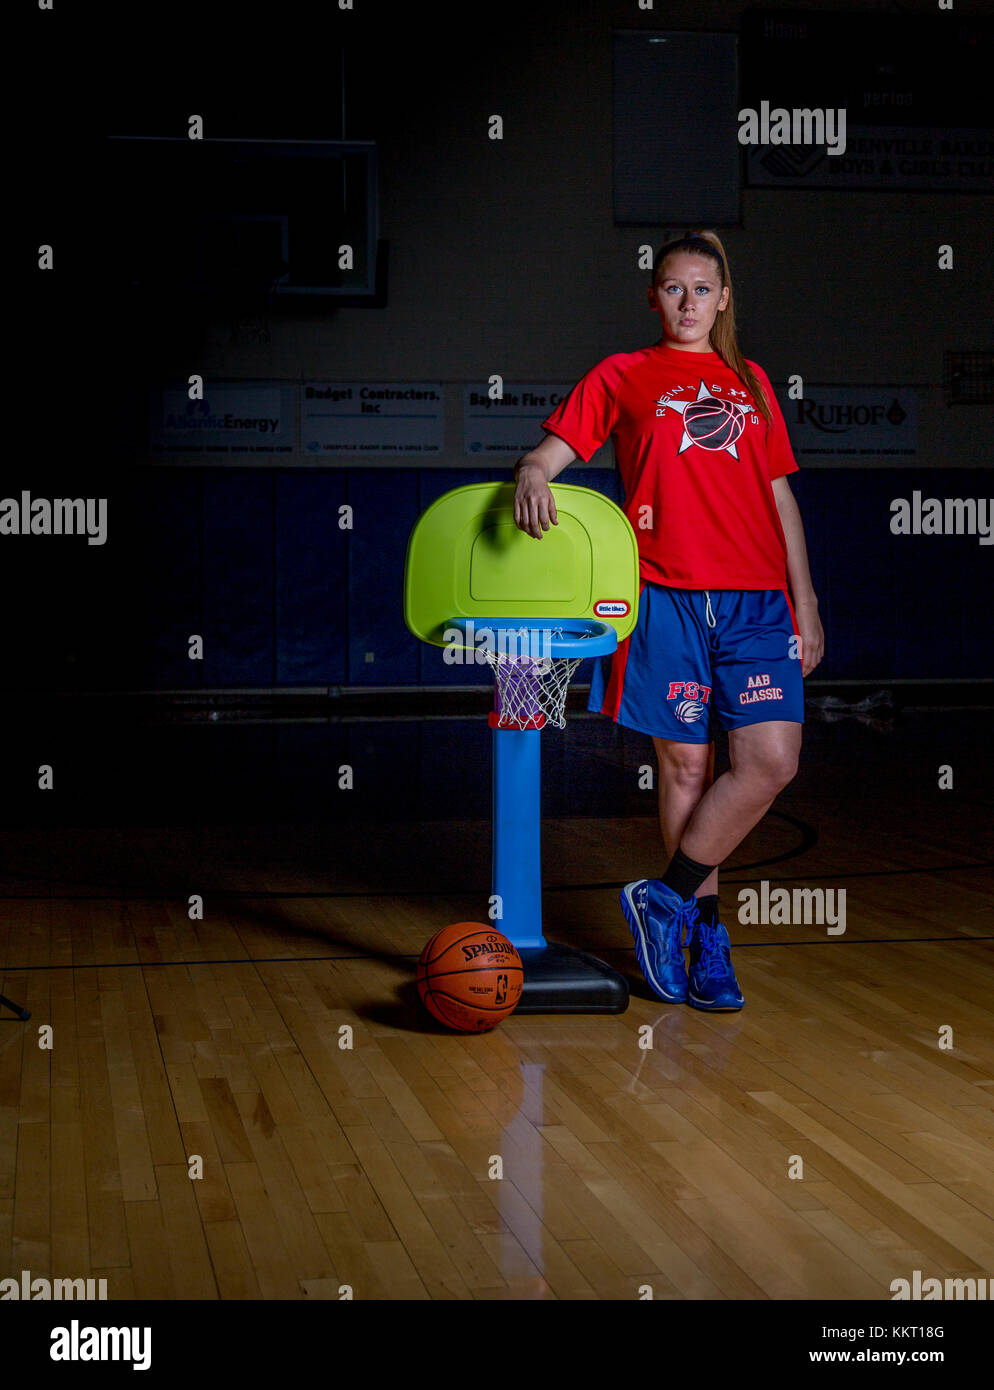 Girls basketball player Banque de photographies et d'images à haute  résolution - Alamy